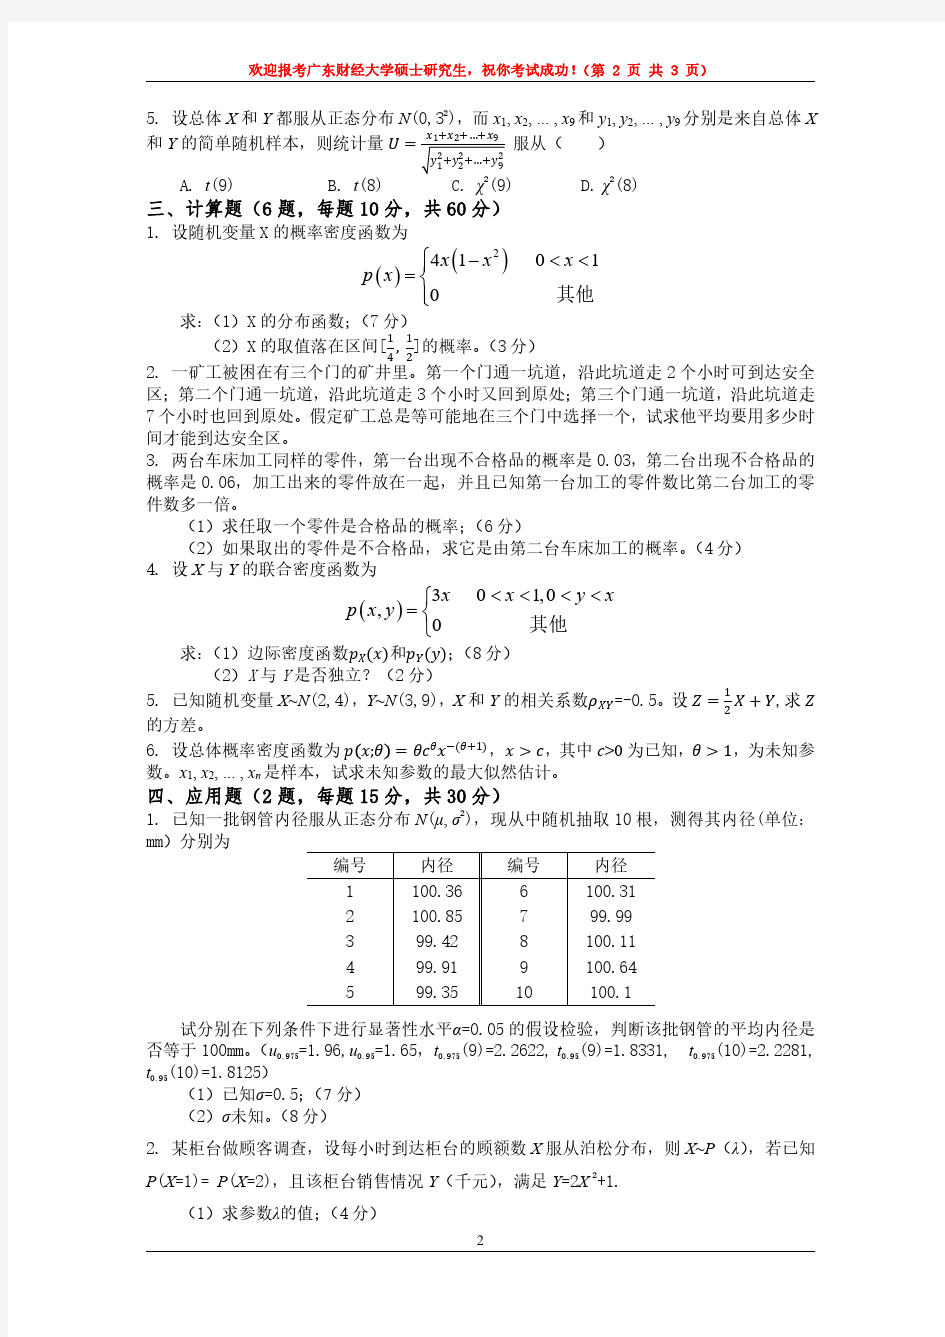 2017广东财经大学硕士初试真题之807概率论与梳理统计